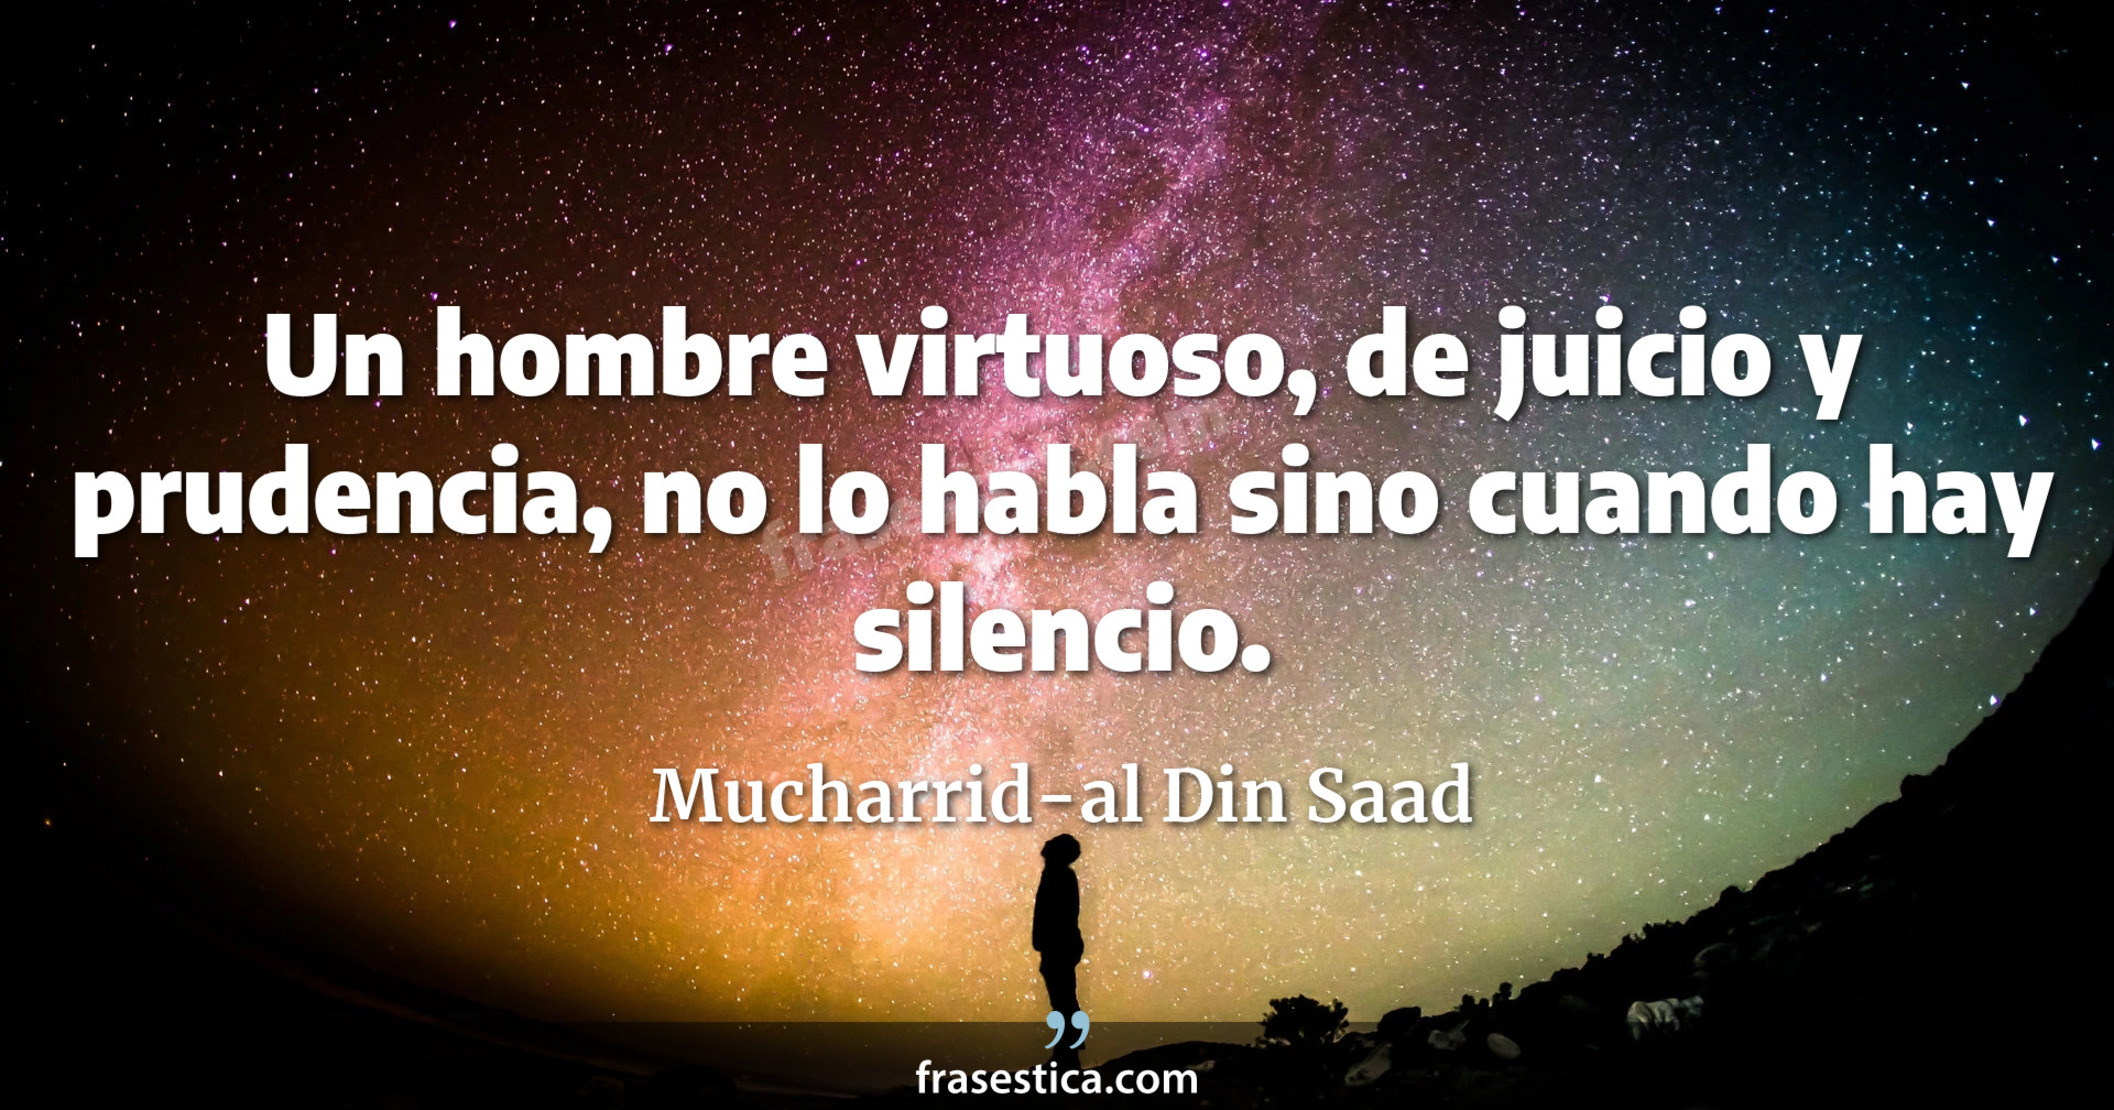 Un hombre virtuoso, de juicio y prudencia, no lo habla sino cuando hay silencio. - Mucharrid-al Din Saad